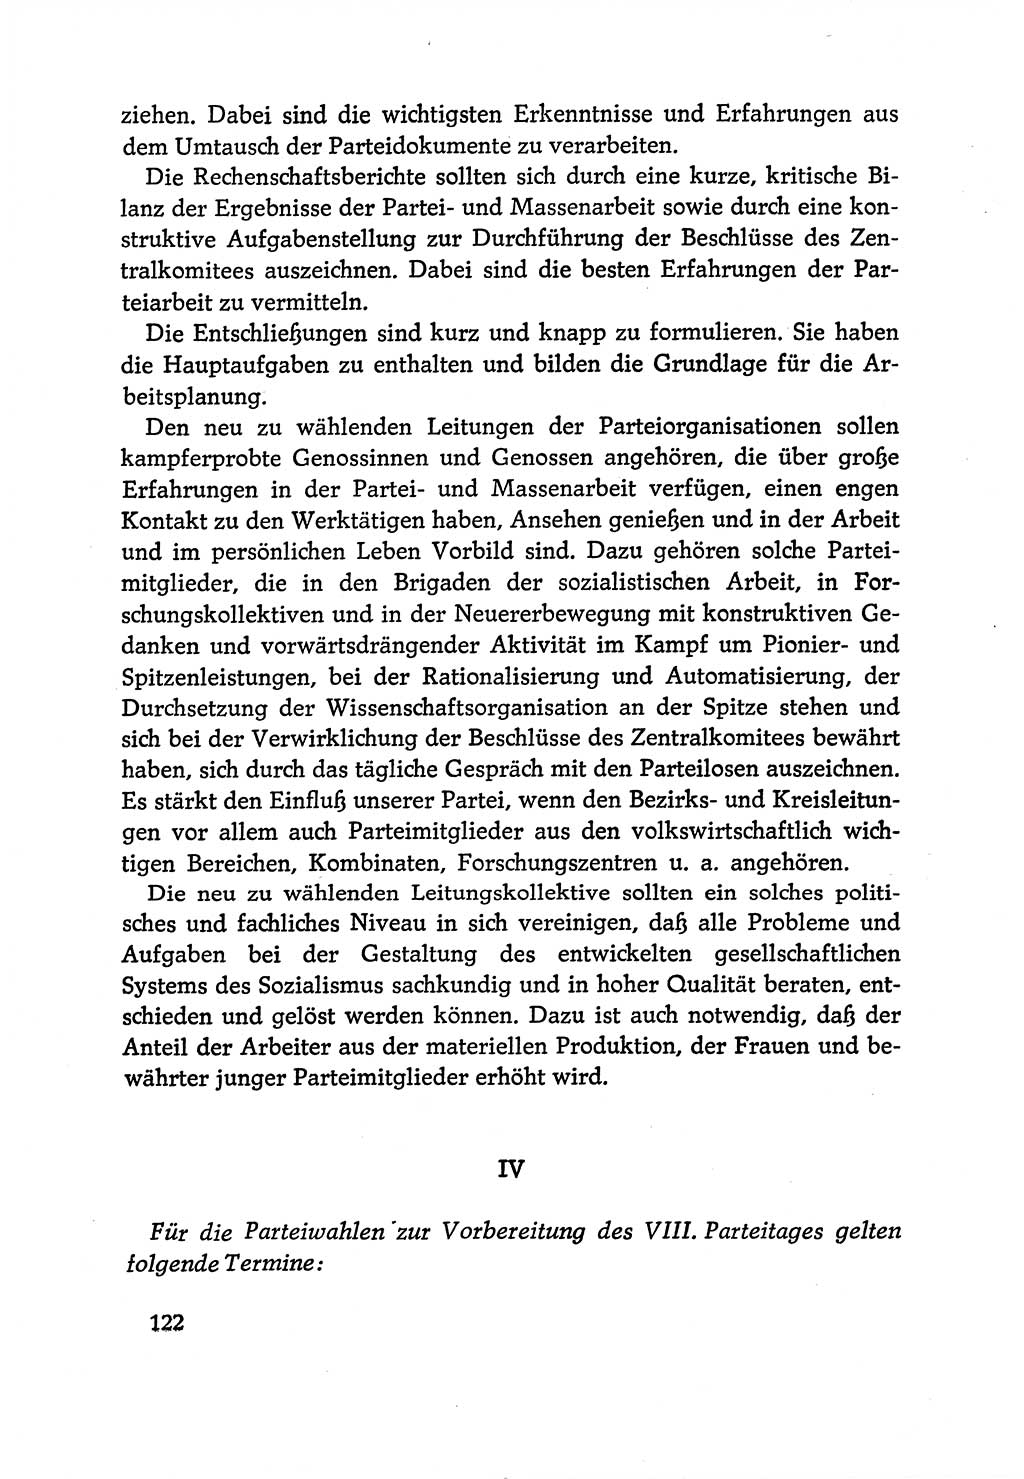 Dokumente der Sozialistischen Einheitspartei Deutschlands (SED) [Deutsche Demokratische Republik (DDR)] 1970-1971, Seite 122 (Dok. SED DDR 1970-1971, S. 122)